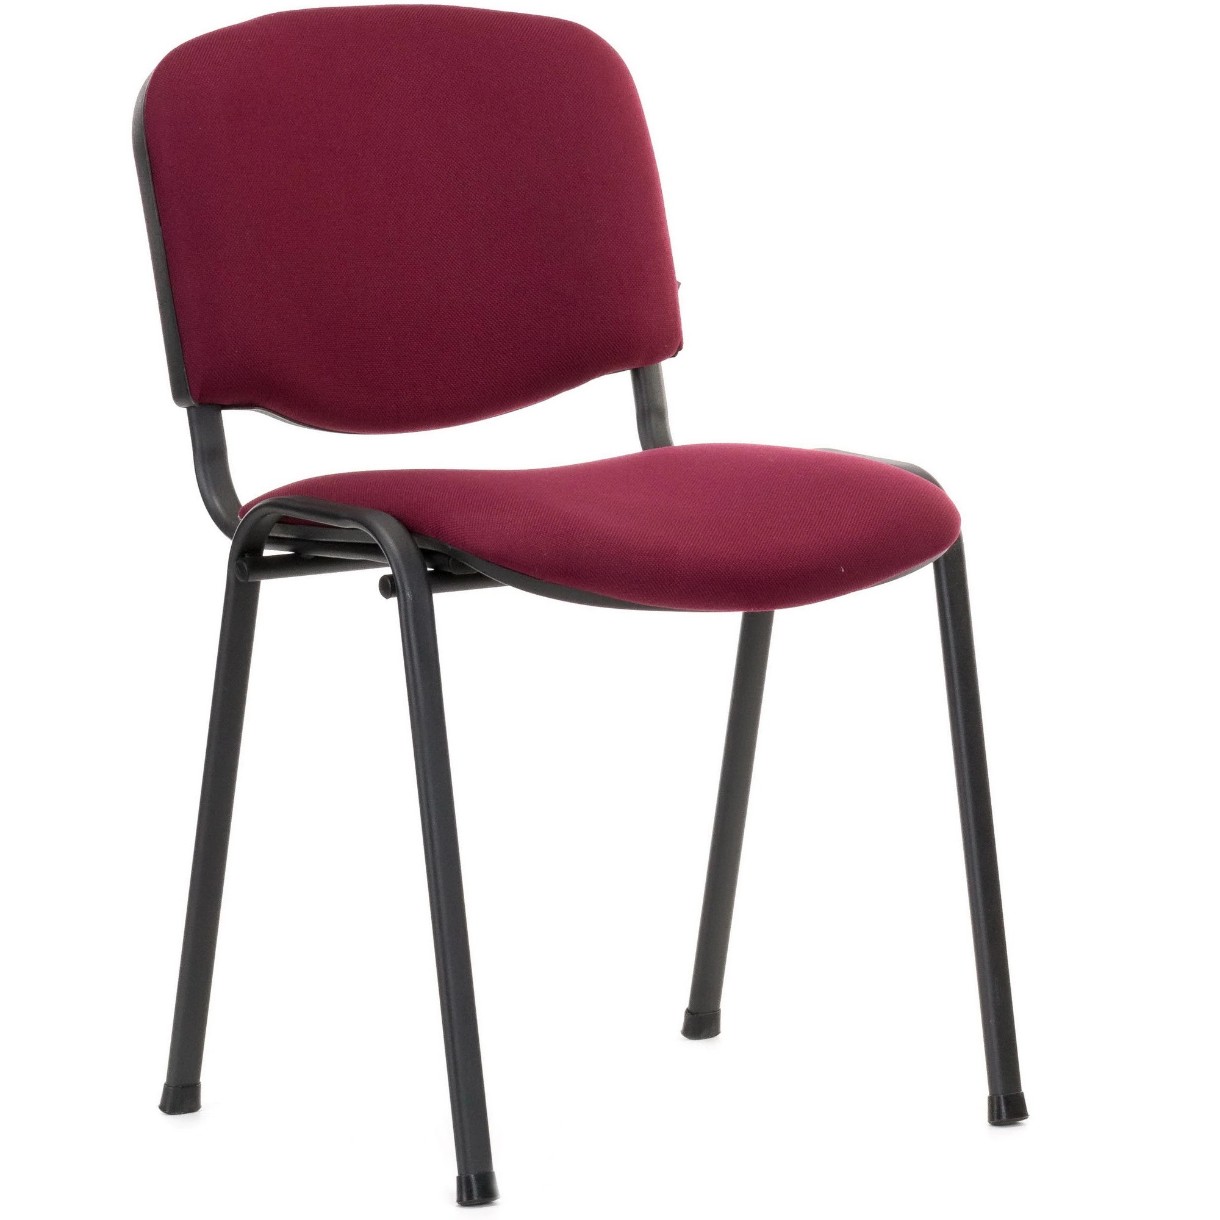 Офисный стул Новый стиль ISO Red/Black C-29